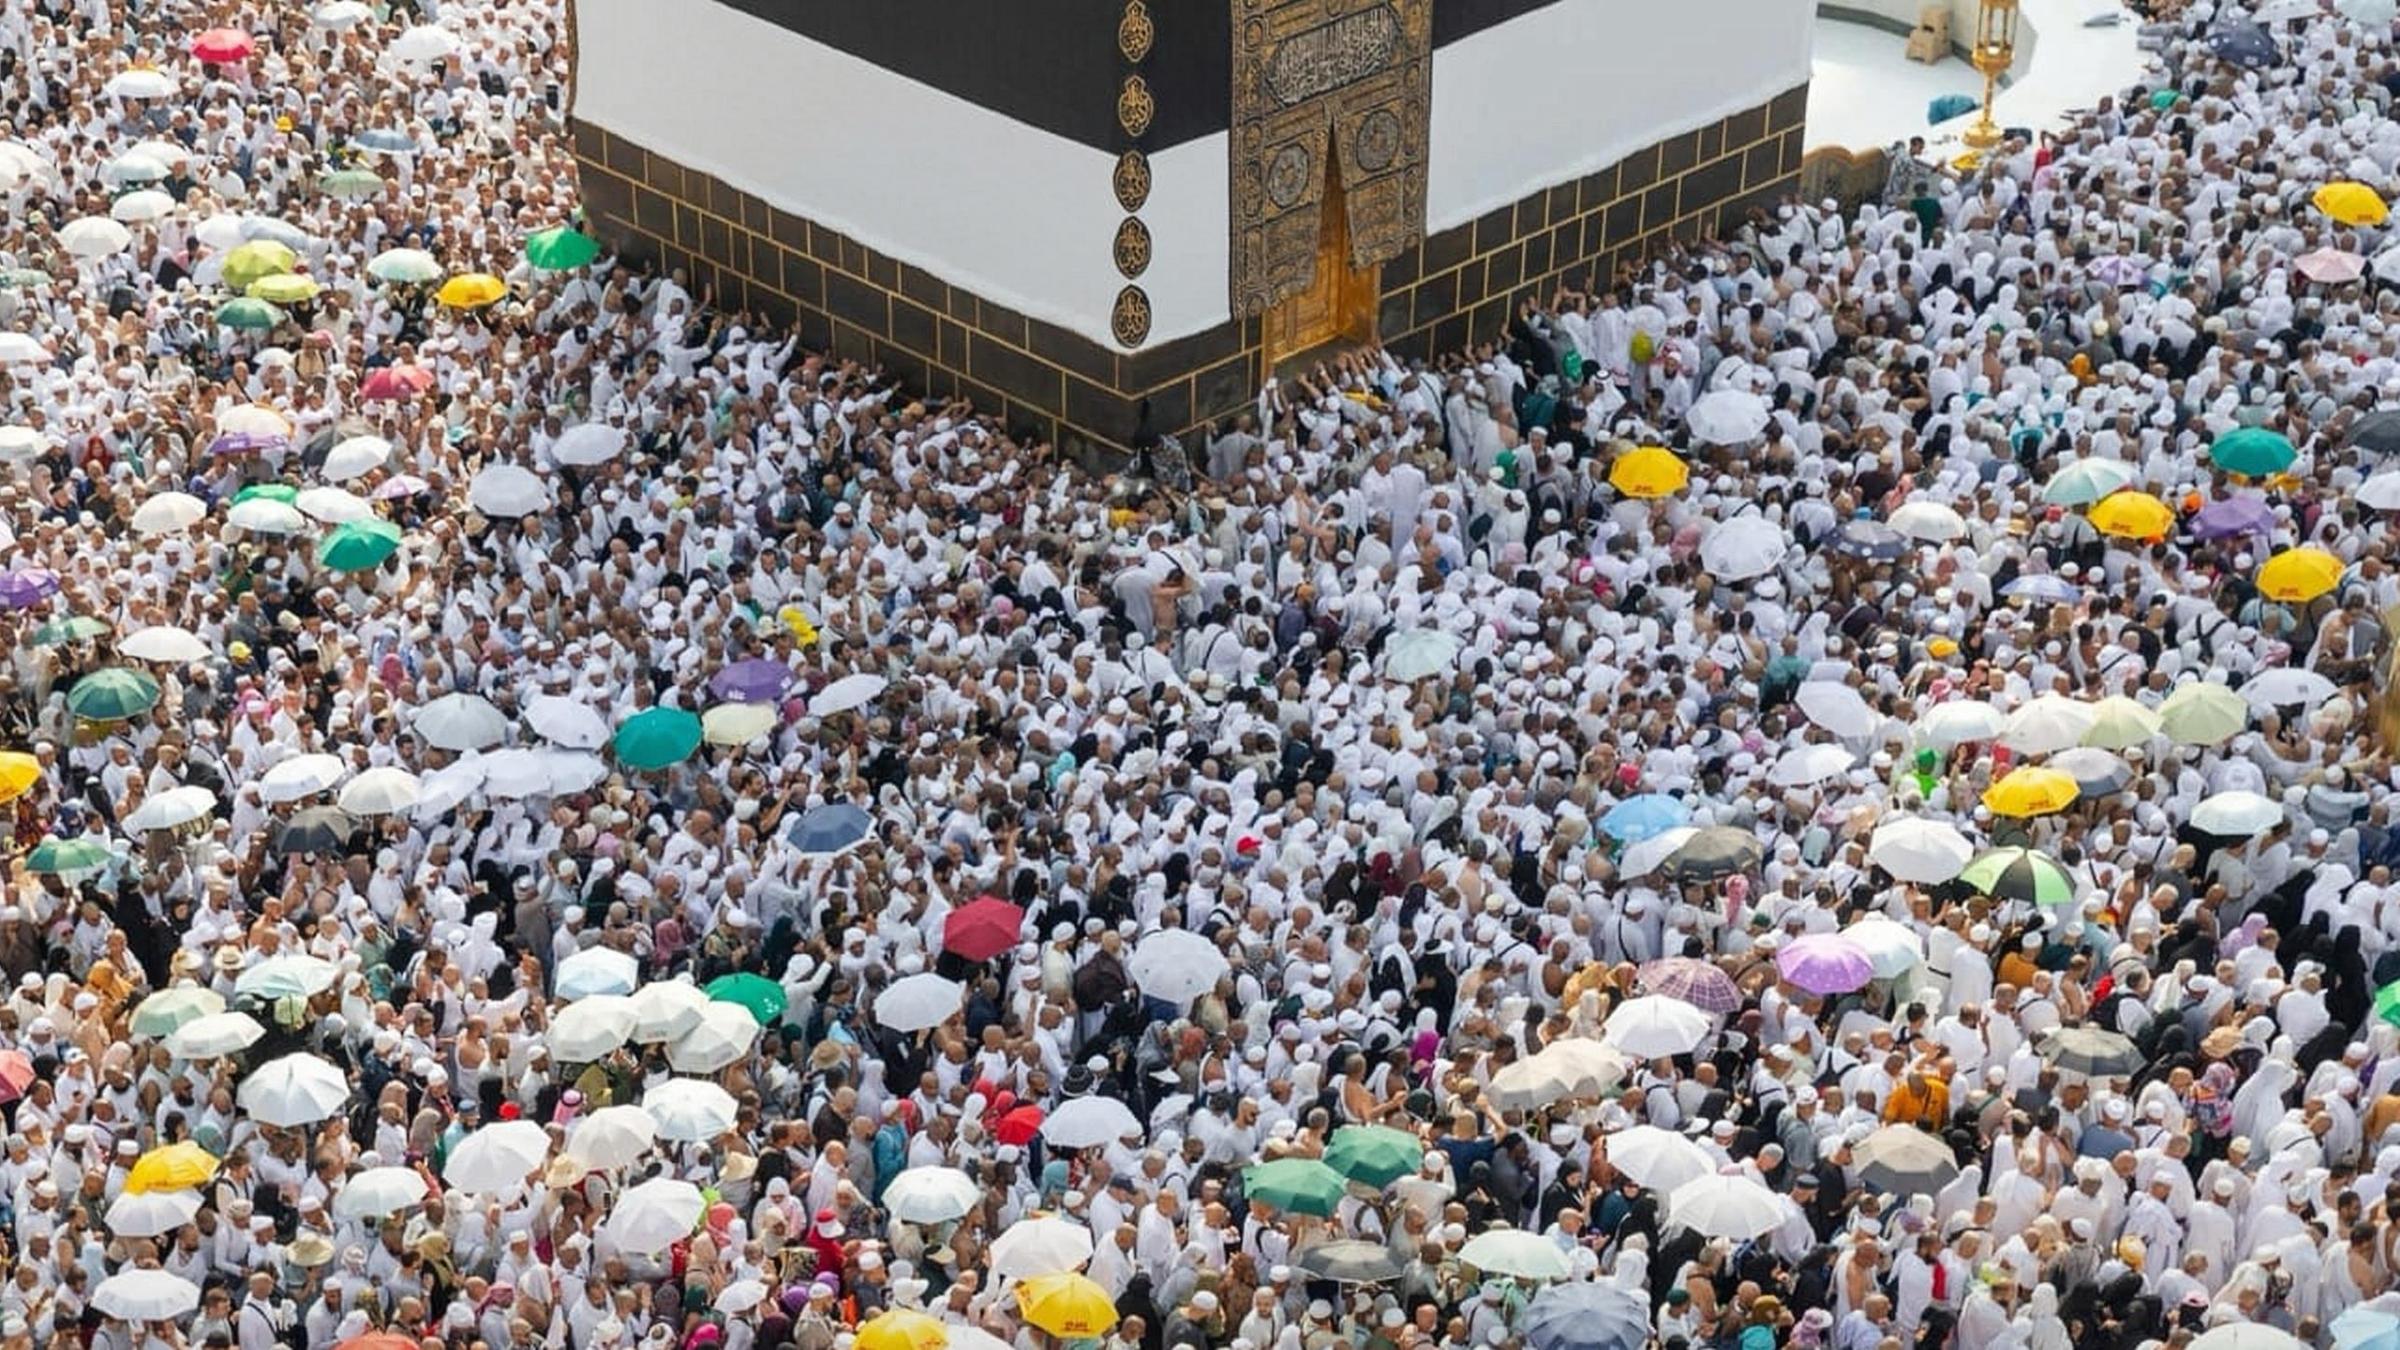 Muslimische Pilger umrunden die Kaaba, das heiligste Heiligtum des Islam, in der Großen Moschee während der Hadsch. Muslime aus aller Welt versammeln sich in Mekka zur jährlichen Hadsch-Pilgerfahrt, einer der fünf Säulen des Islam.